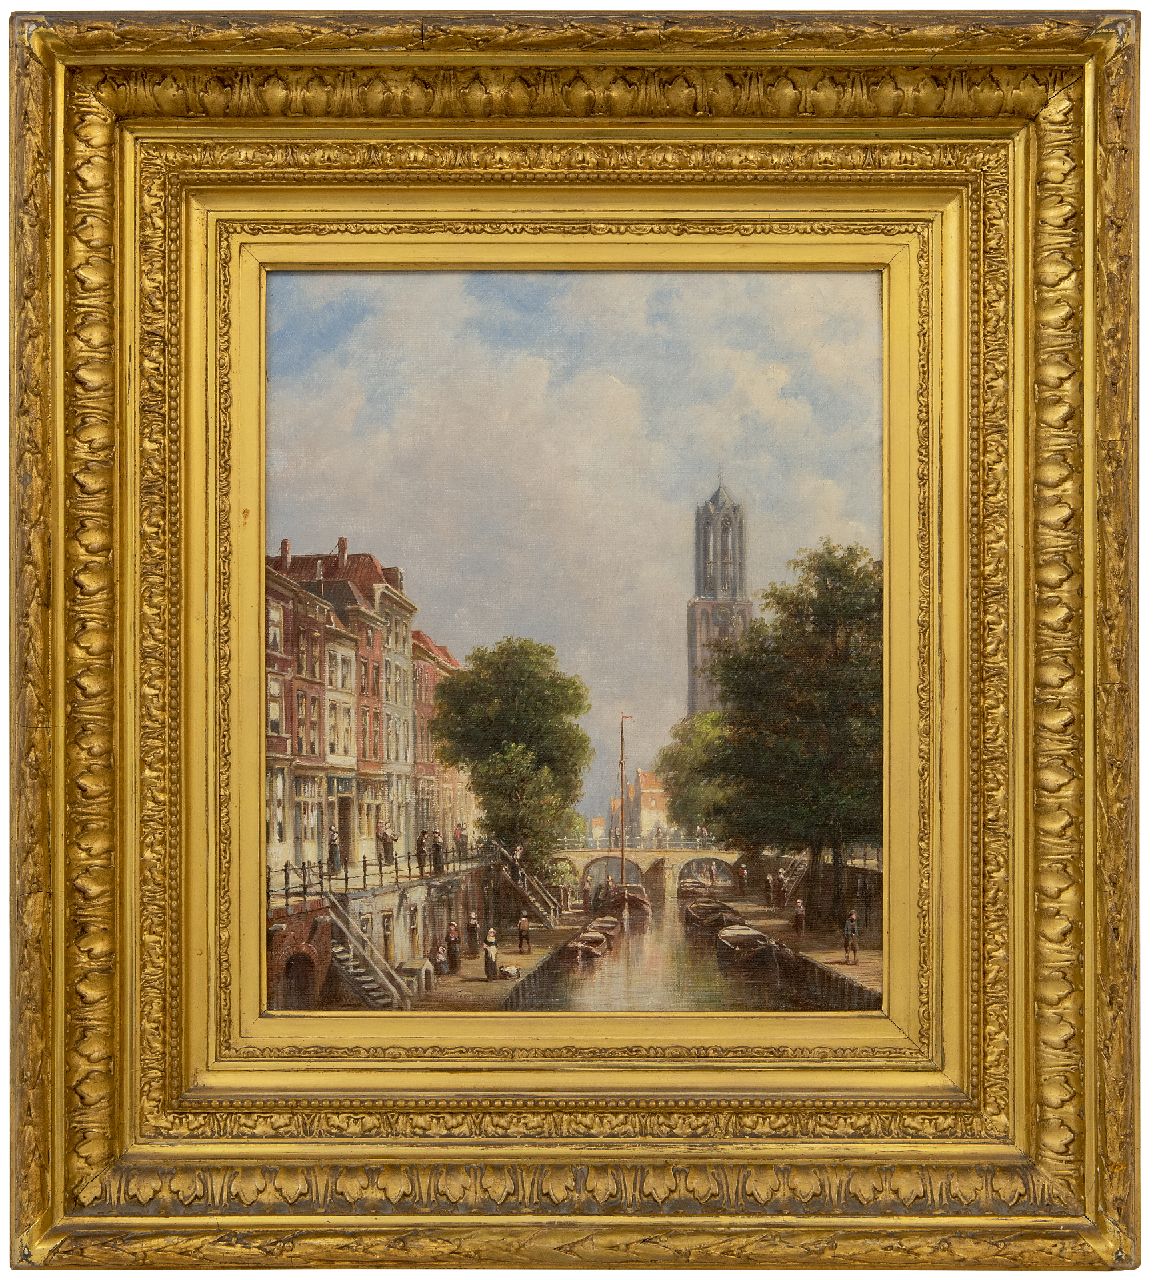 Vertin P.G.  | Petrus Gerardus Vertin | Schilderijen te koop aangeboden | Stadsgezicht met de Domtoren van Utrecht, olieverf op doek 34,1 x 28,6 cm, gesigneerd linksonder